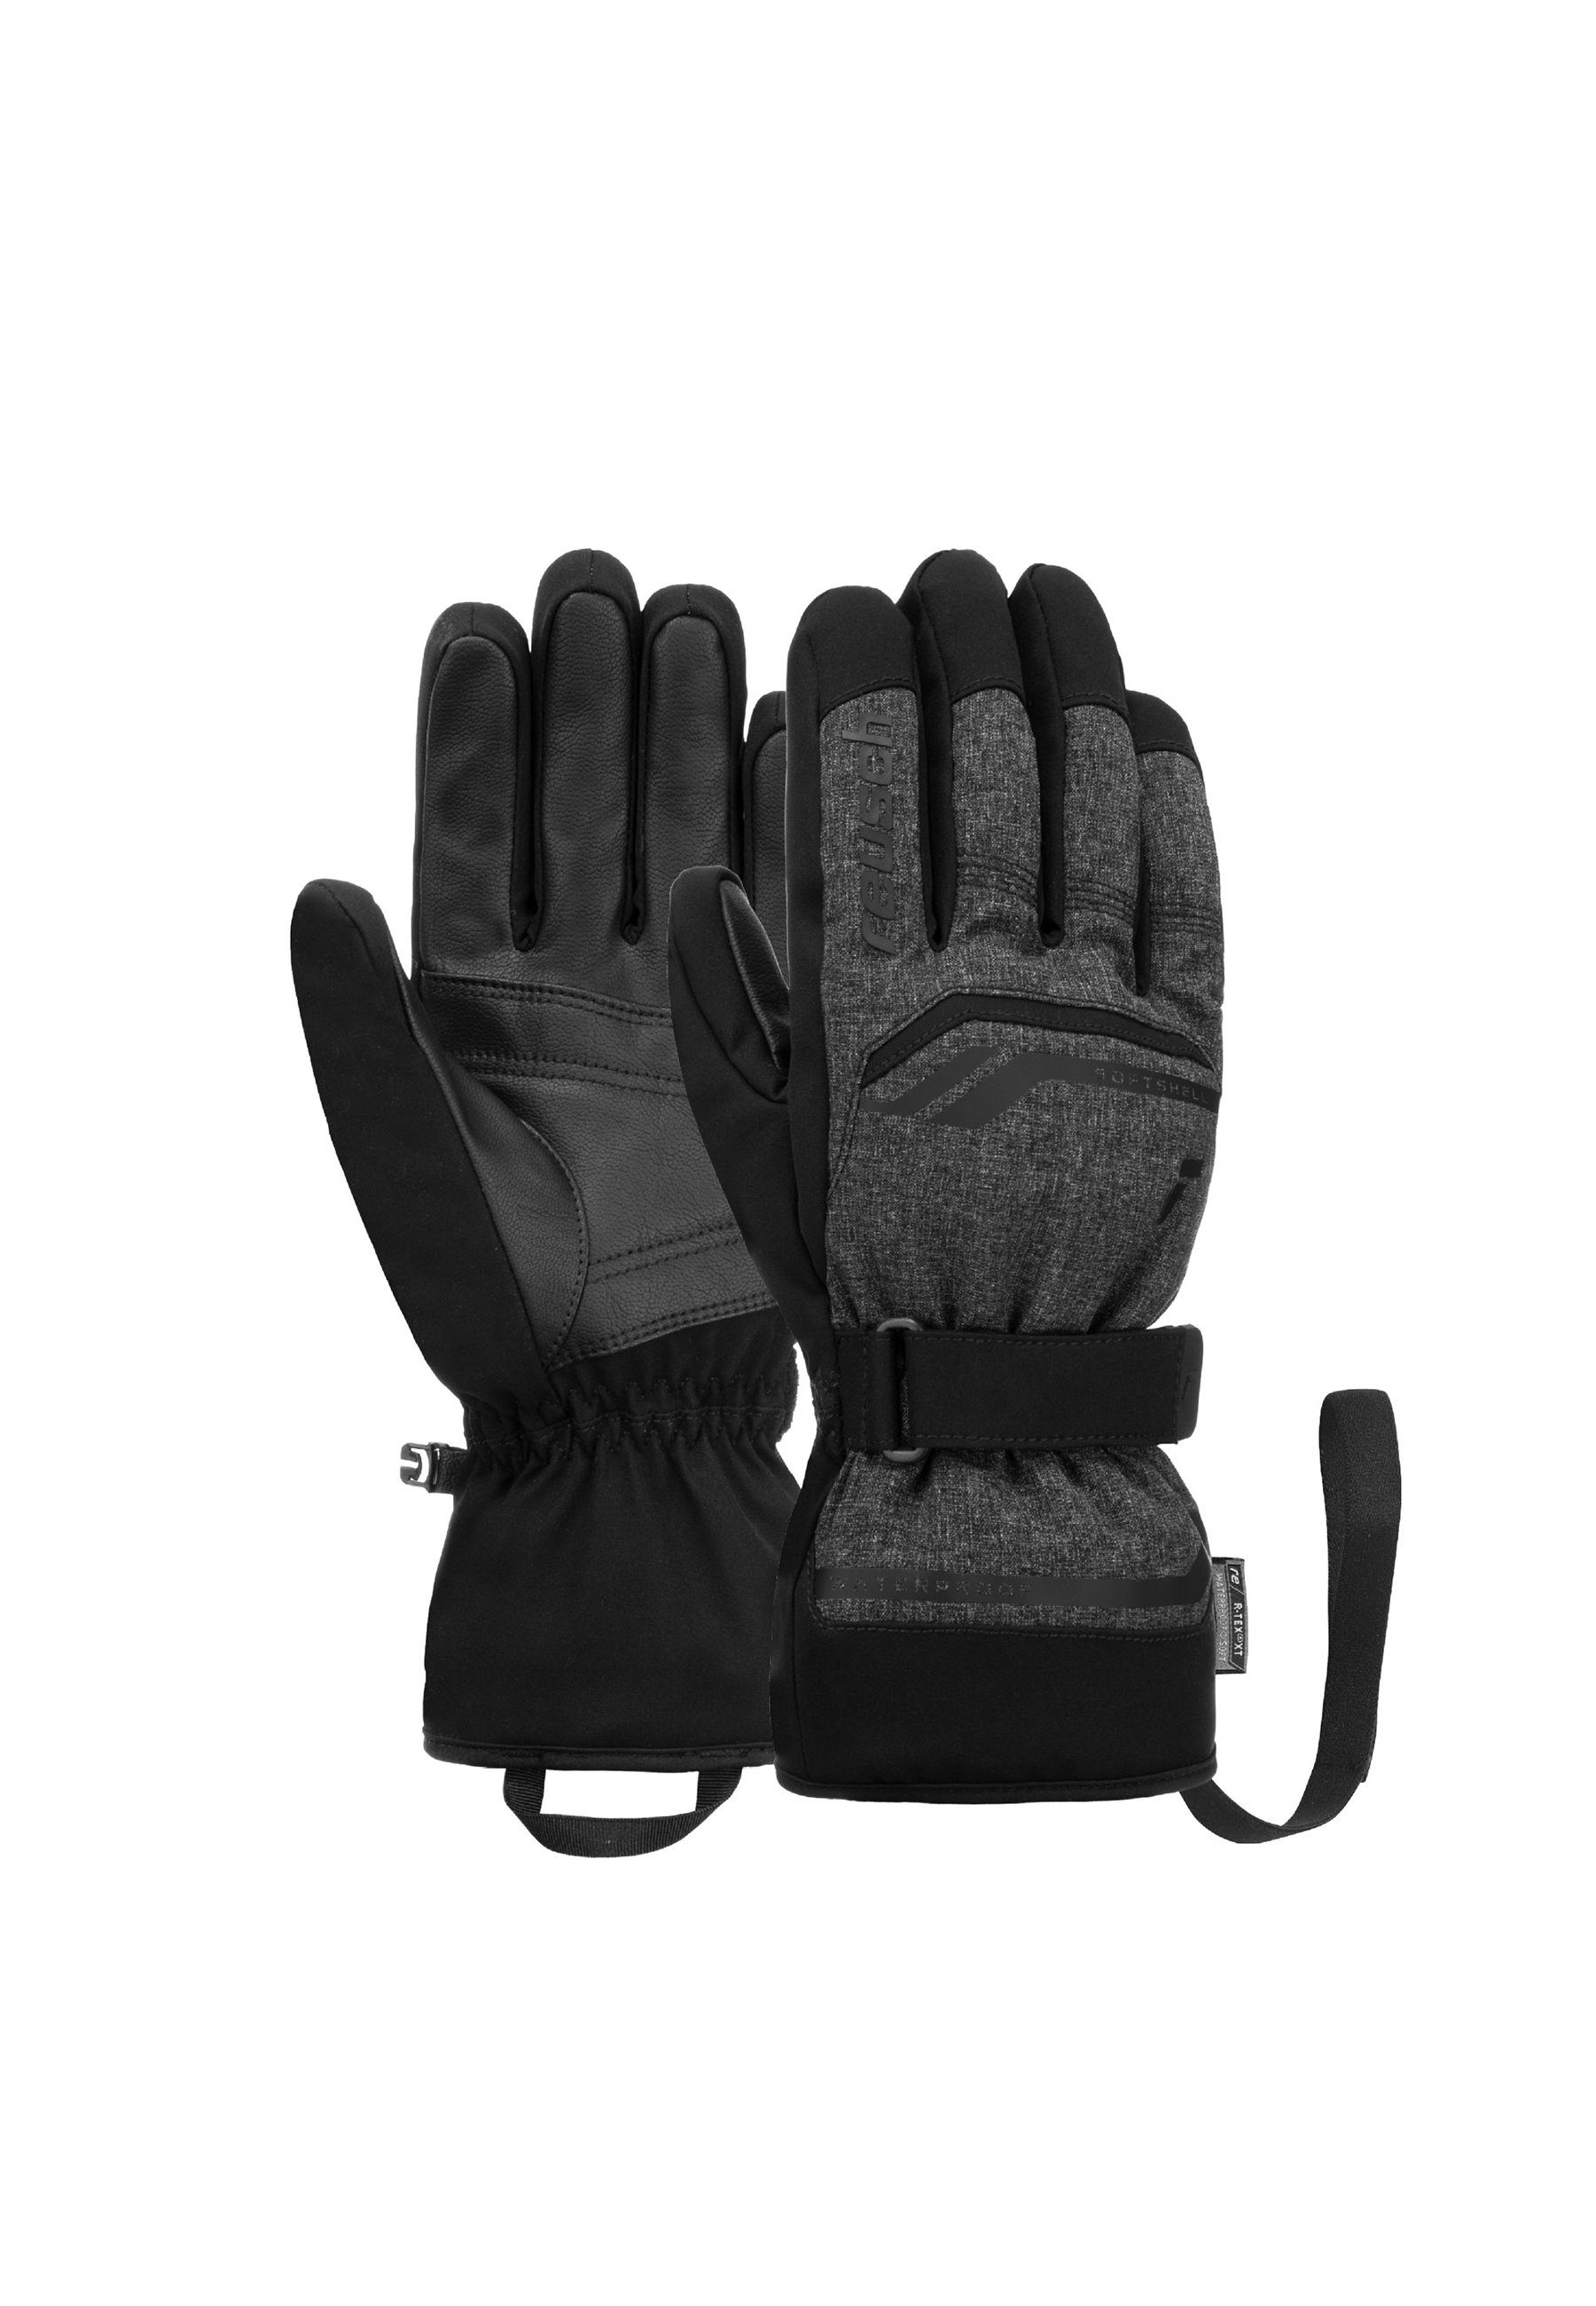 Skihandschuhe warm, sehr und R-TEX® dunkelgrau-schwarz atmungsaktiv Primus XT Reusch wasserdicht